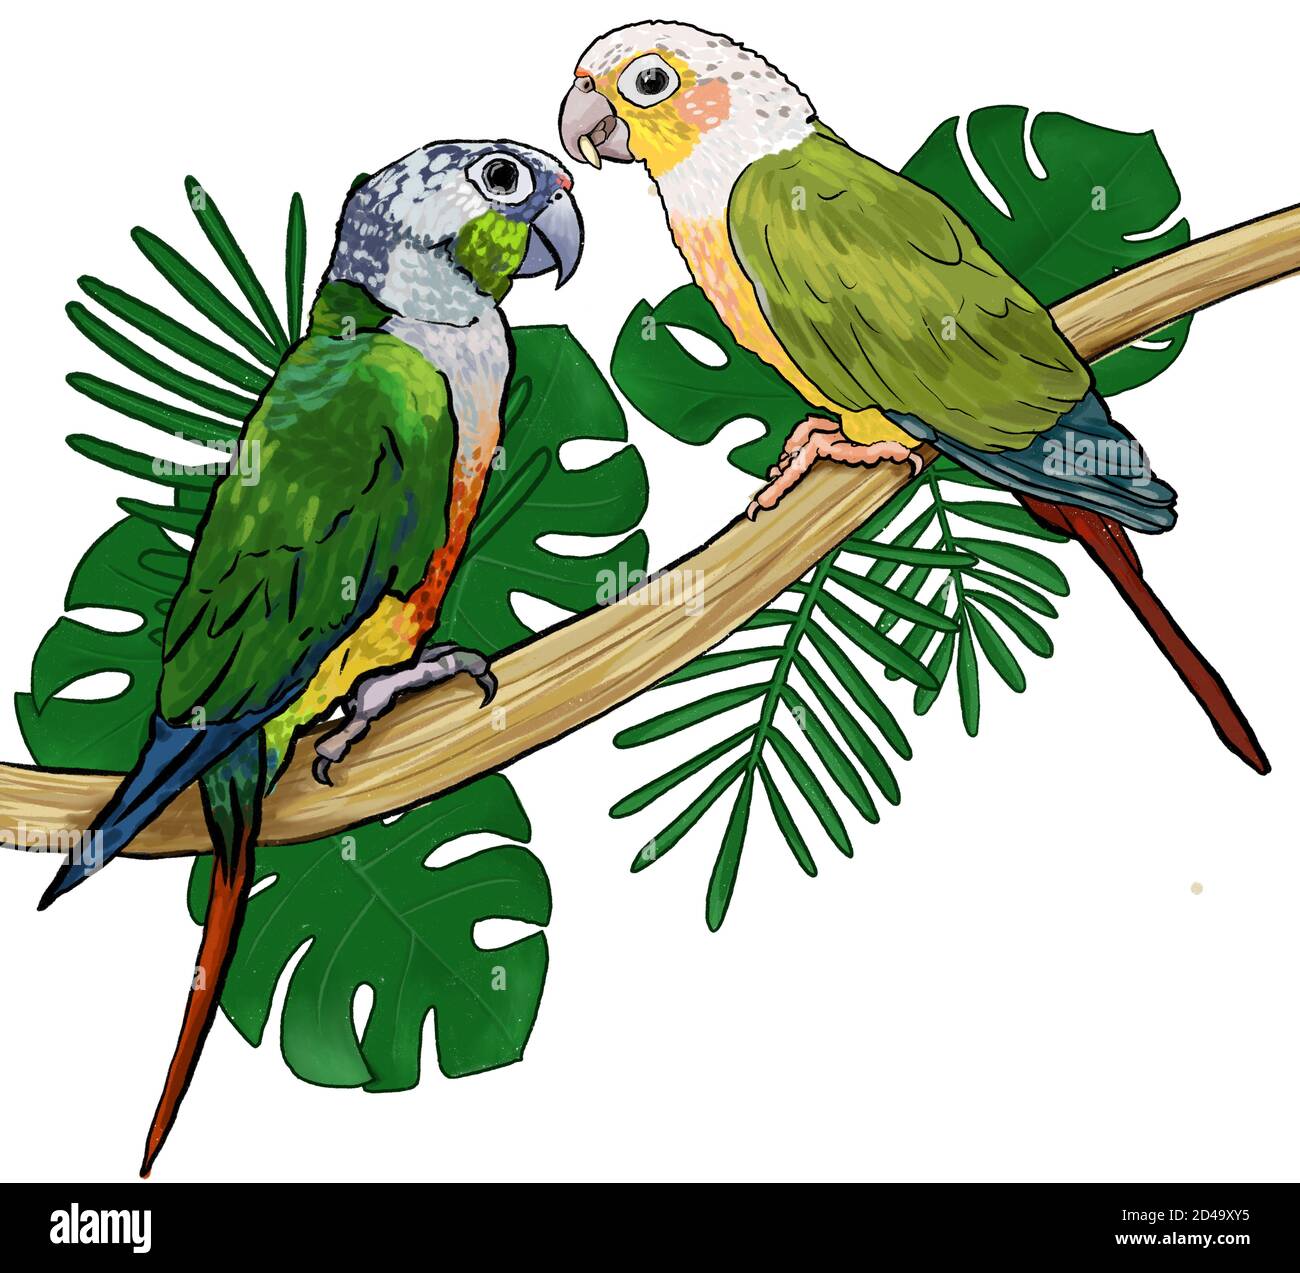 Paire d'oiseaux exotiques tropicaux perroquets assis sur la branche monstère et feuilles de palmier dessin à la main illustration style cketch Banque D'Images